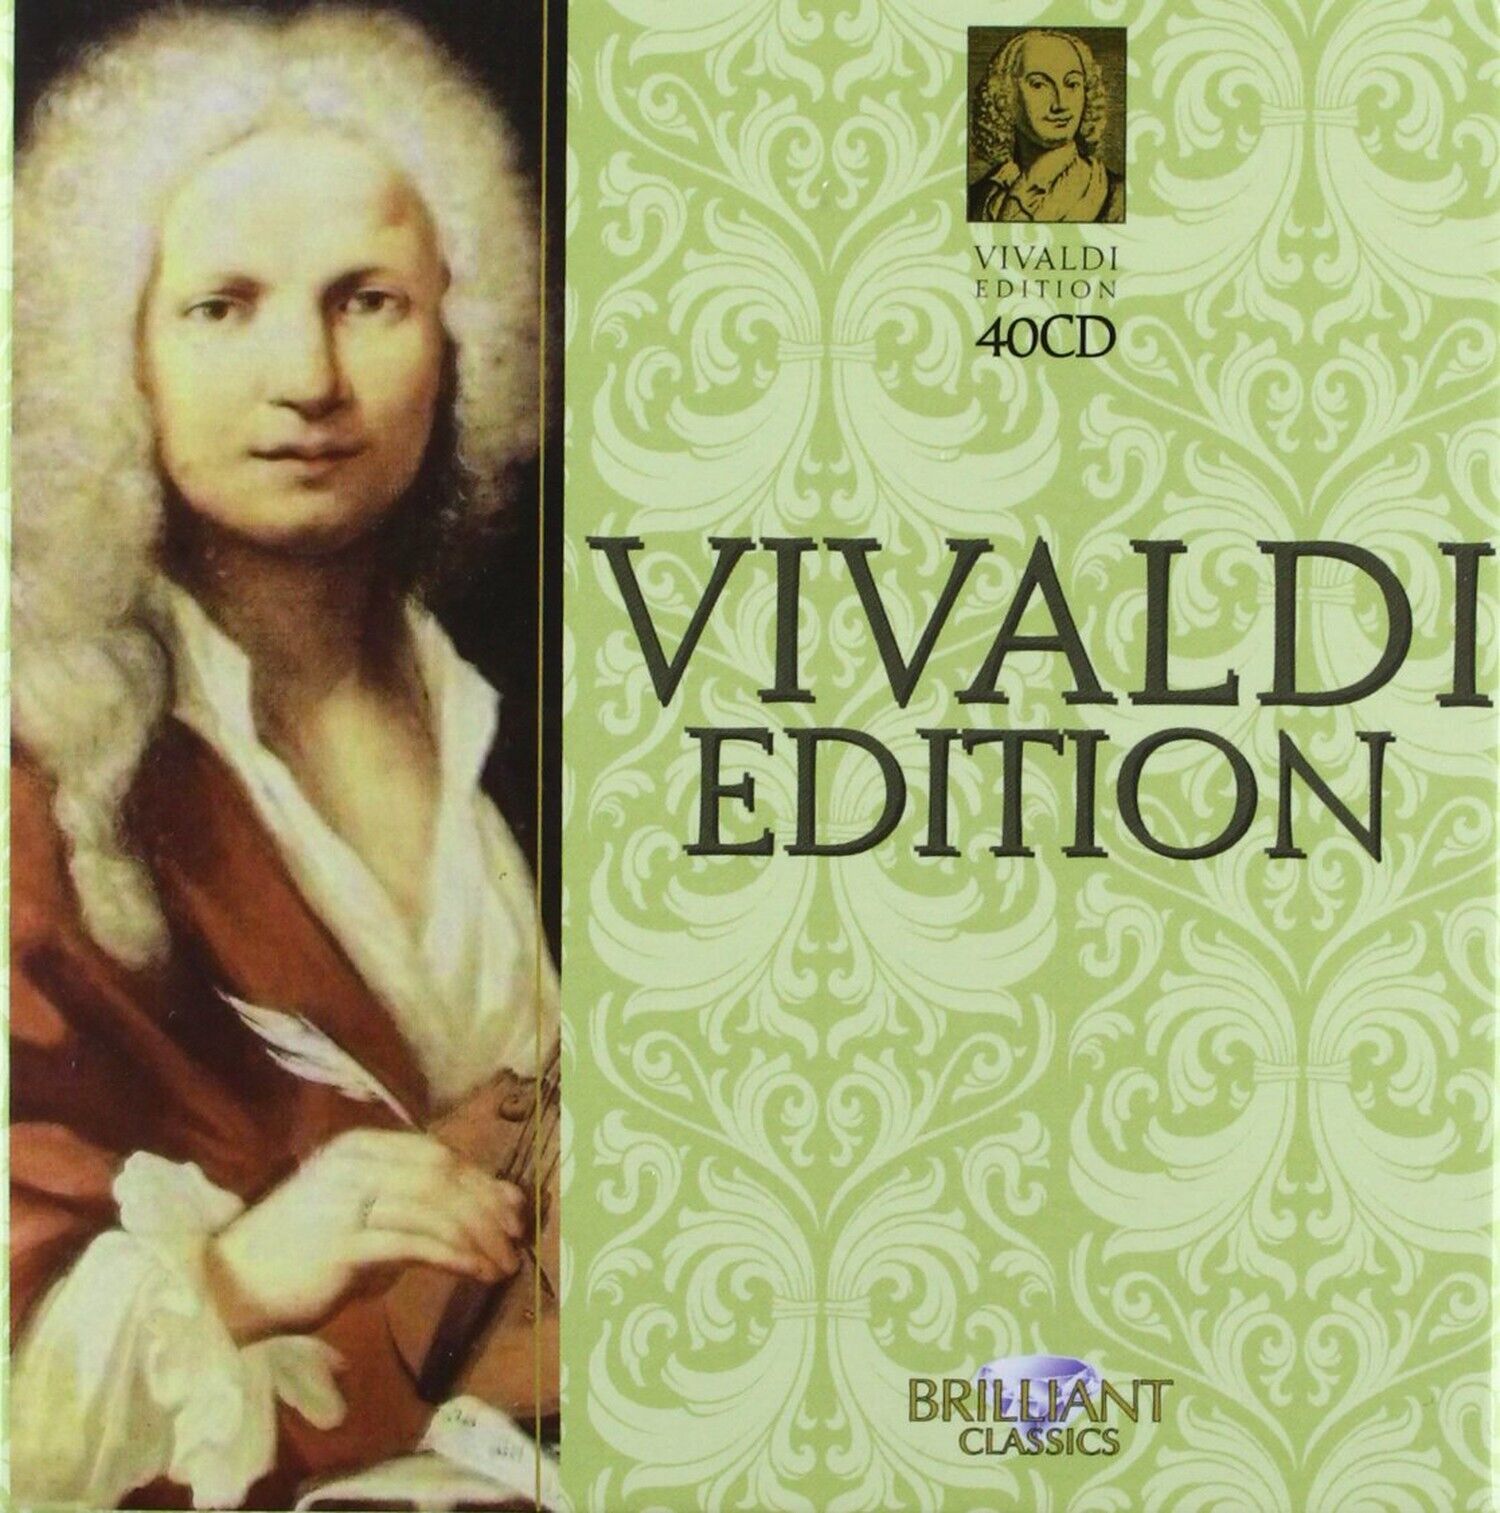 Vivaldi Edition [40 CD BOX SET] Antonio Vivaldi Orchestra